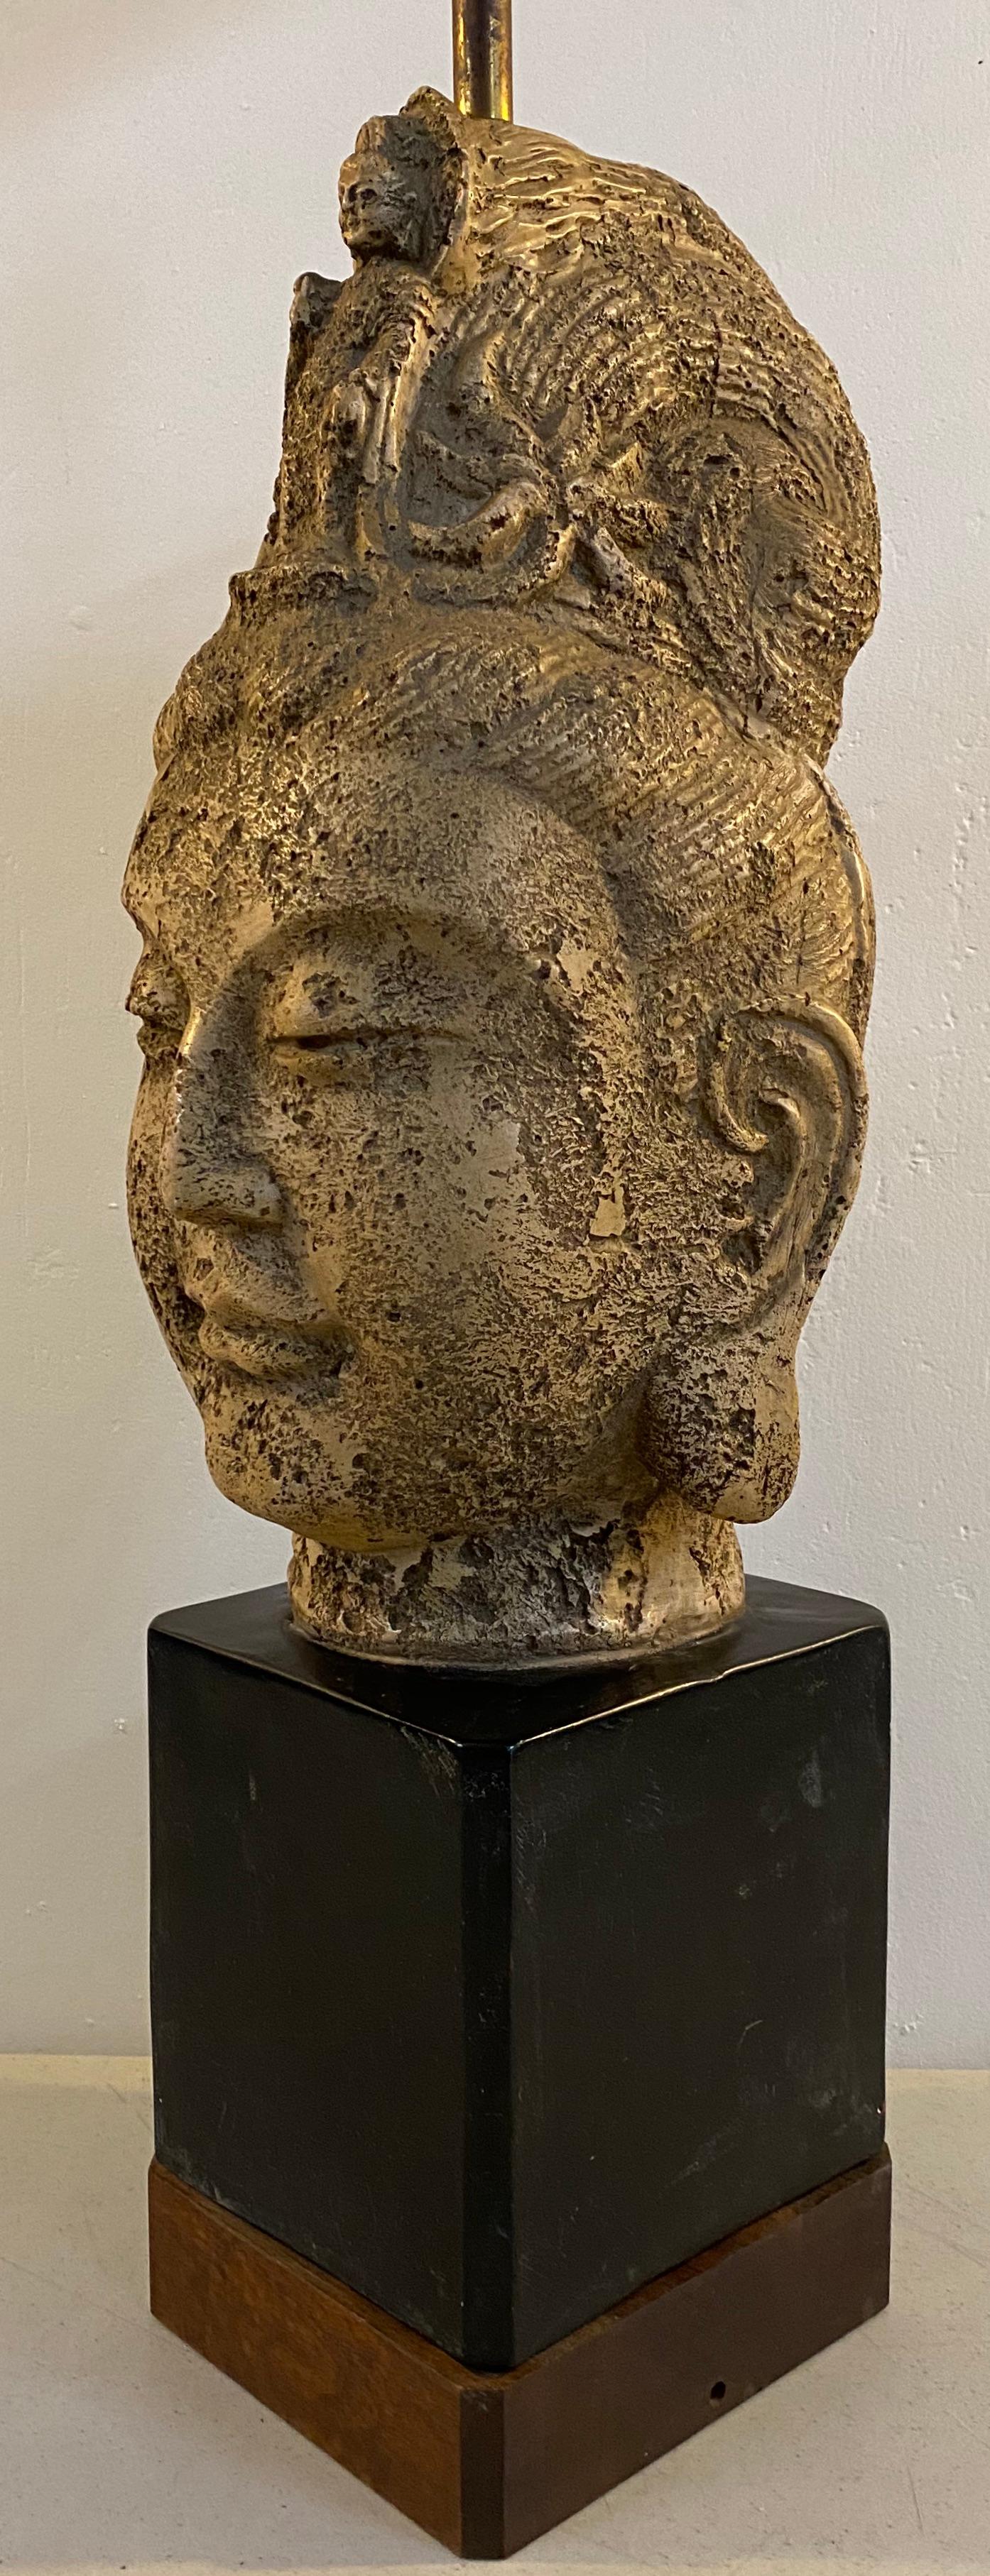 Lampe de tête Tara Buddha en céramique James Mont, vers 1950

Dimensions : 6